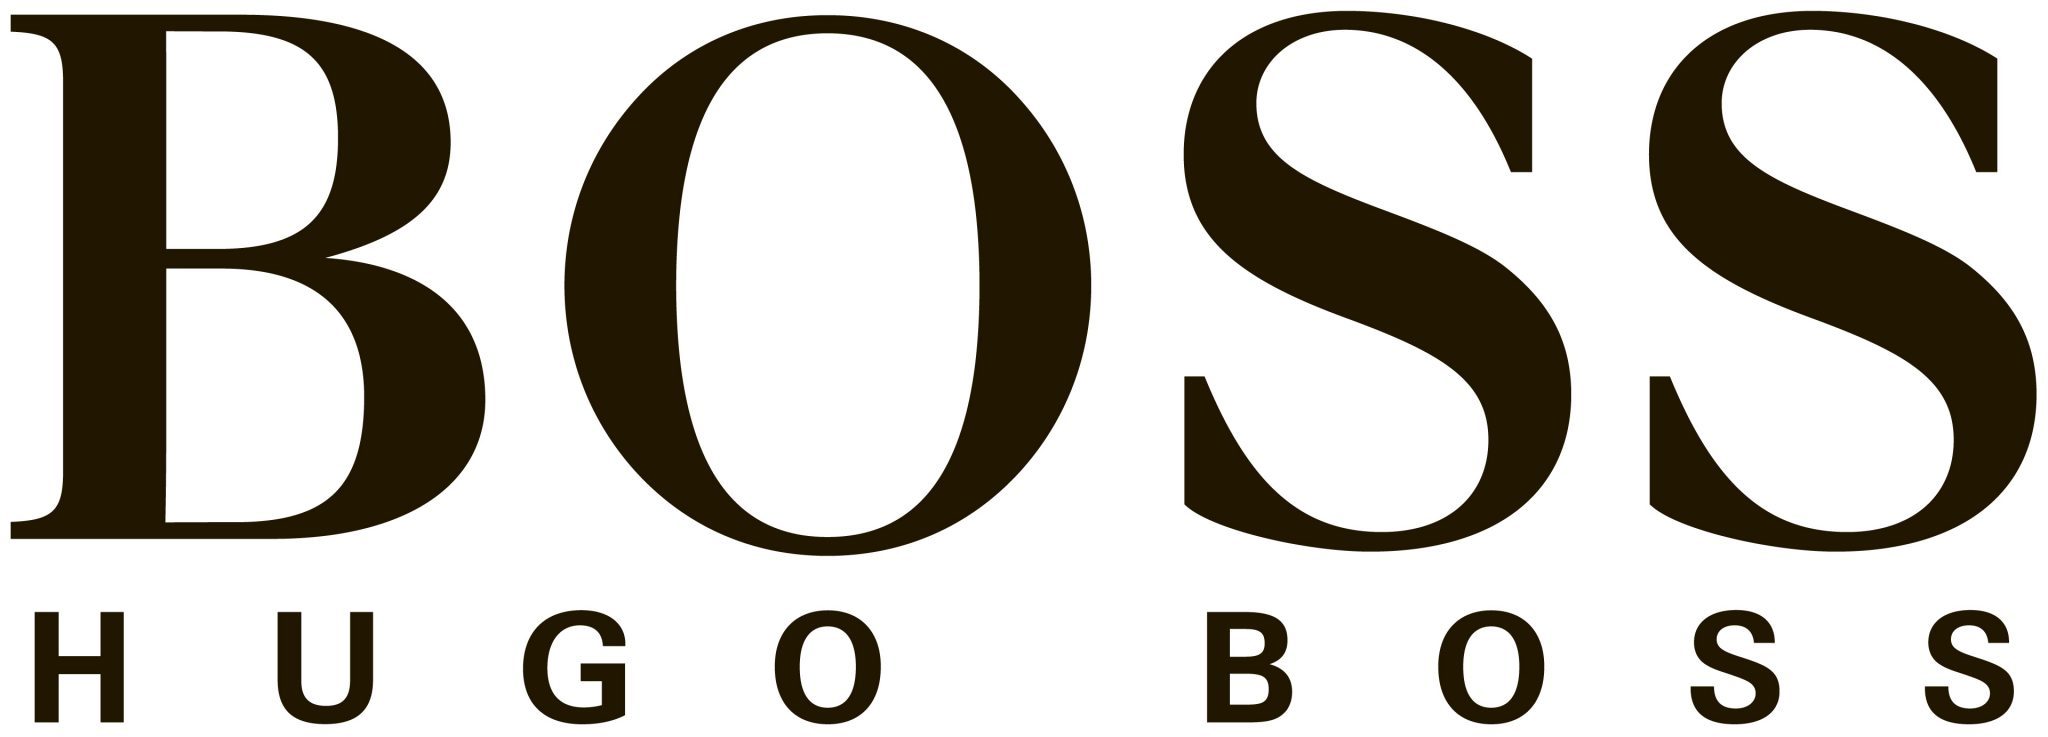 Boss logo